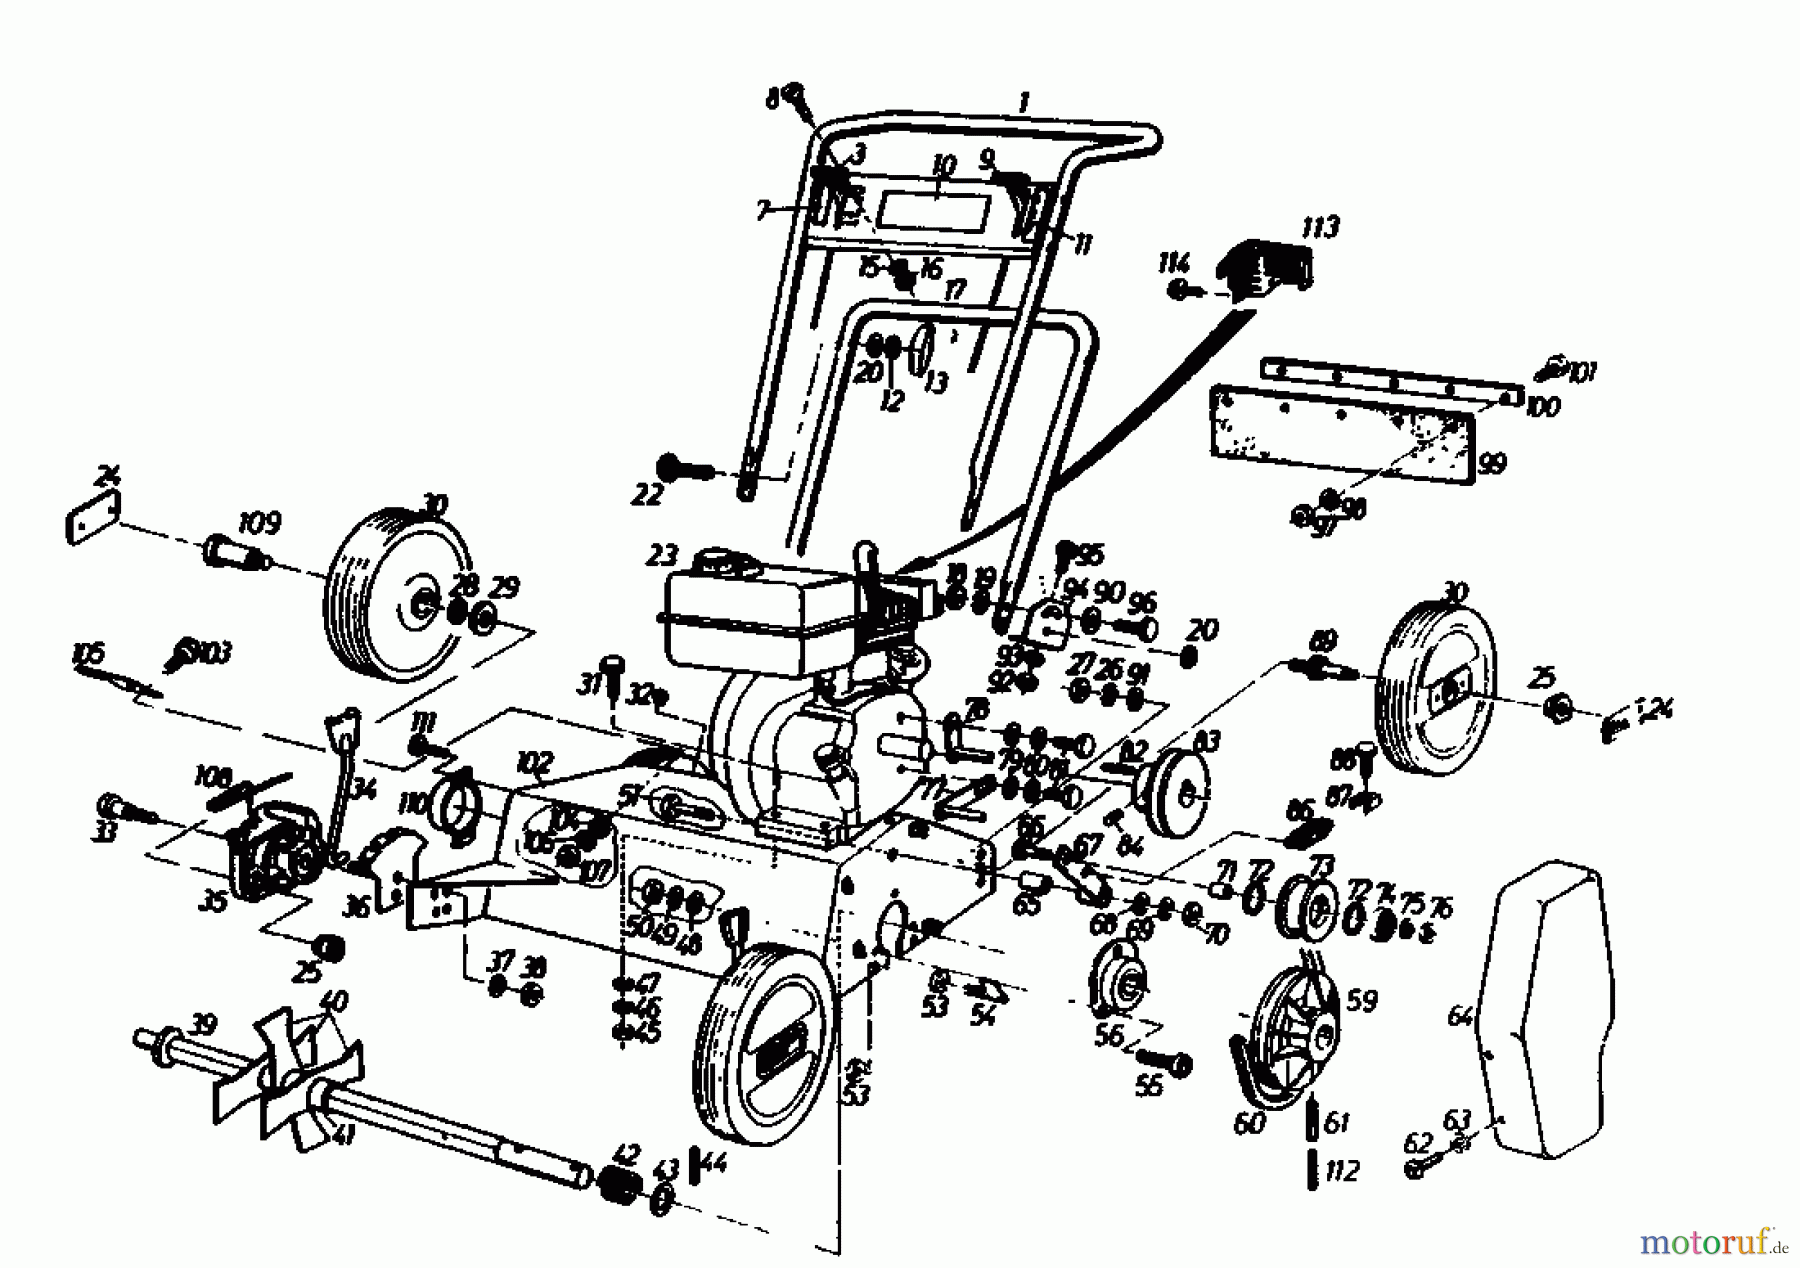  Golf Petrol verticutter 140 V 4 00054.05  (1986) Basic machine